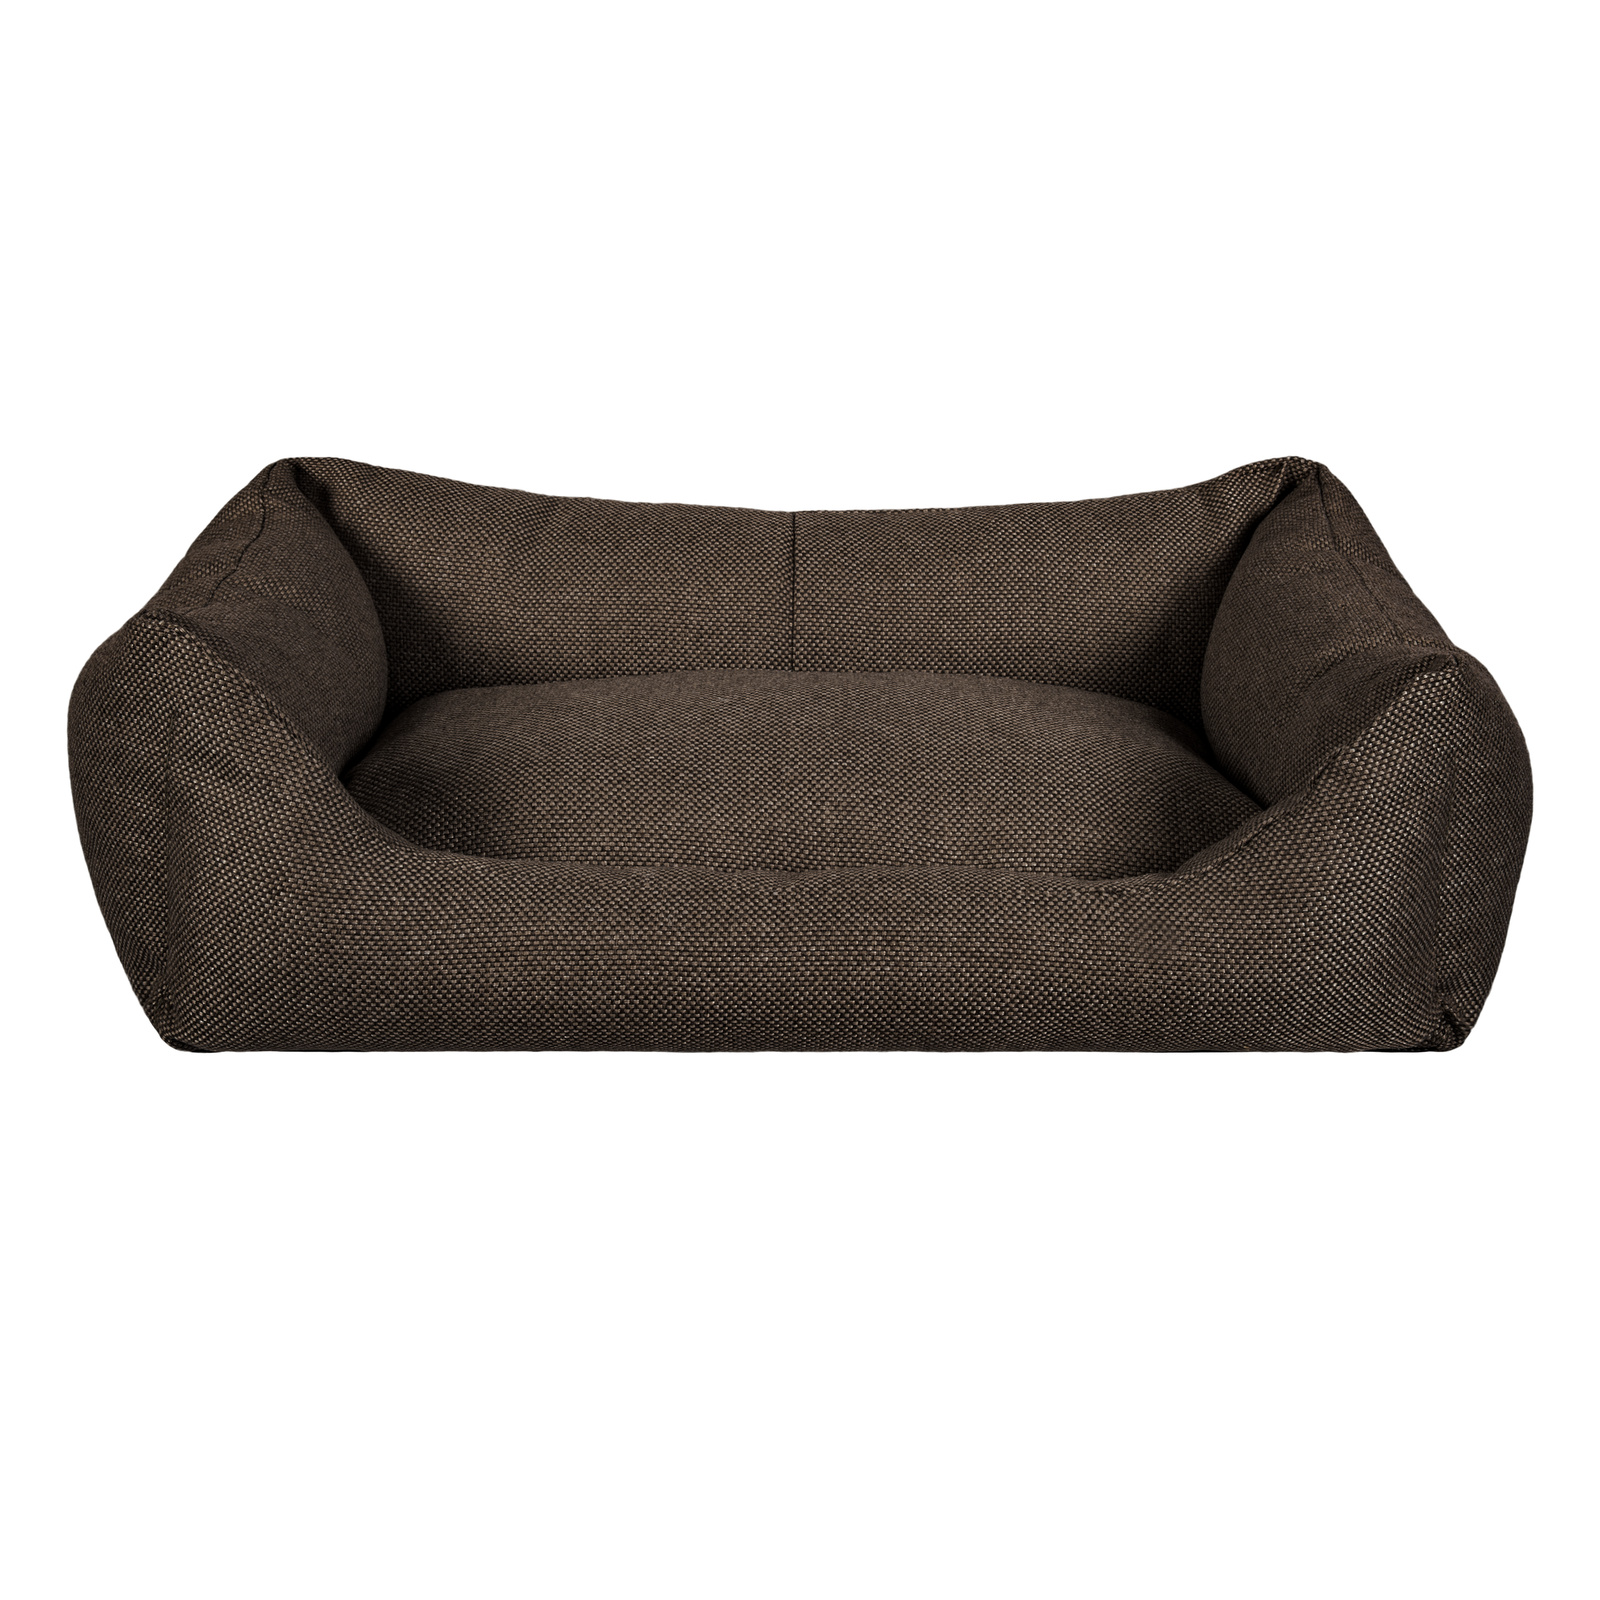 Лежанка для кошки, собаки Tappi текстиль, с подушкой, шоколад, 33x45x15см